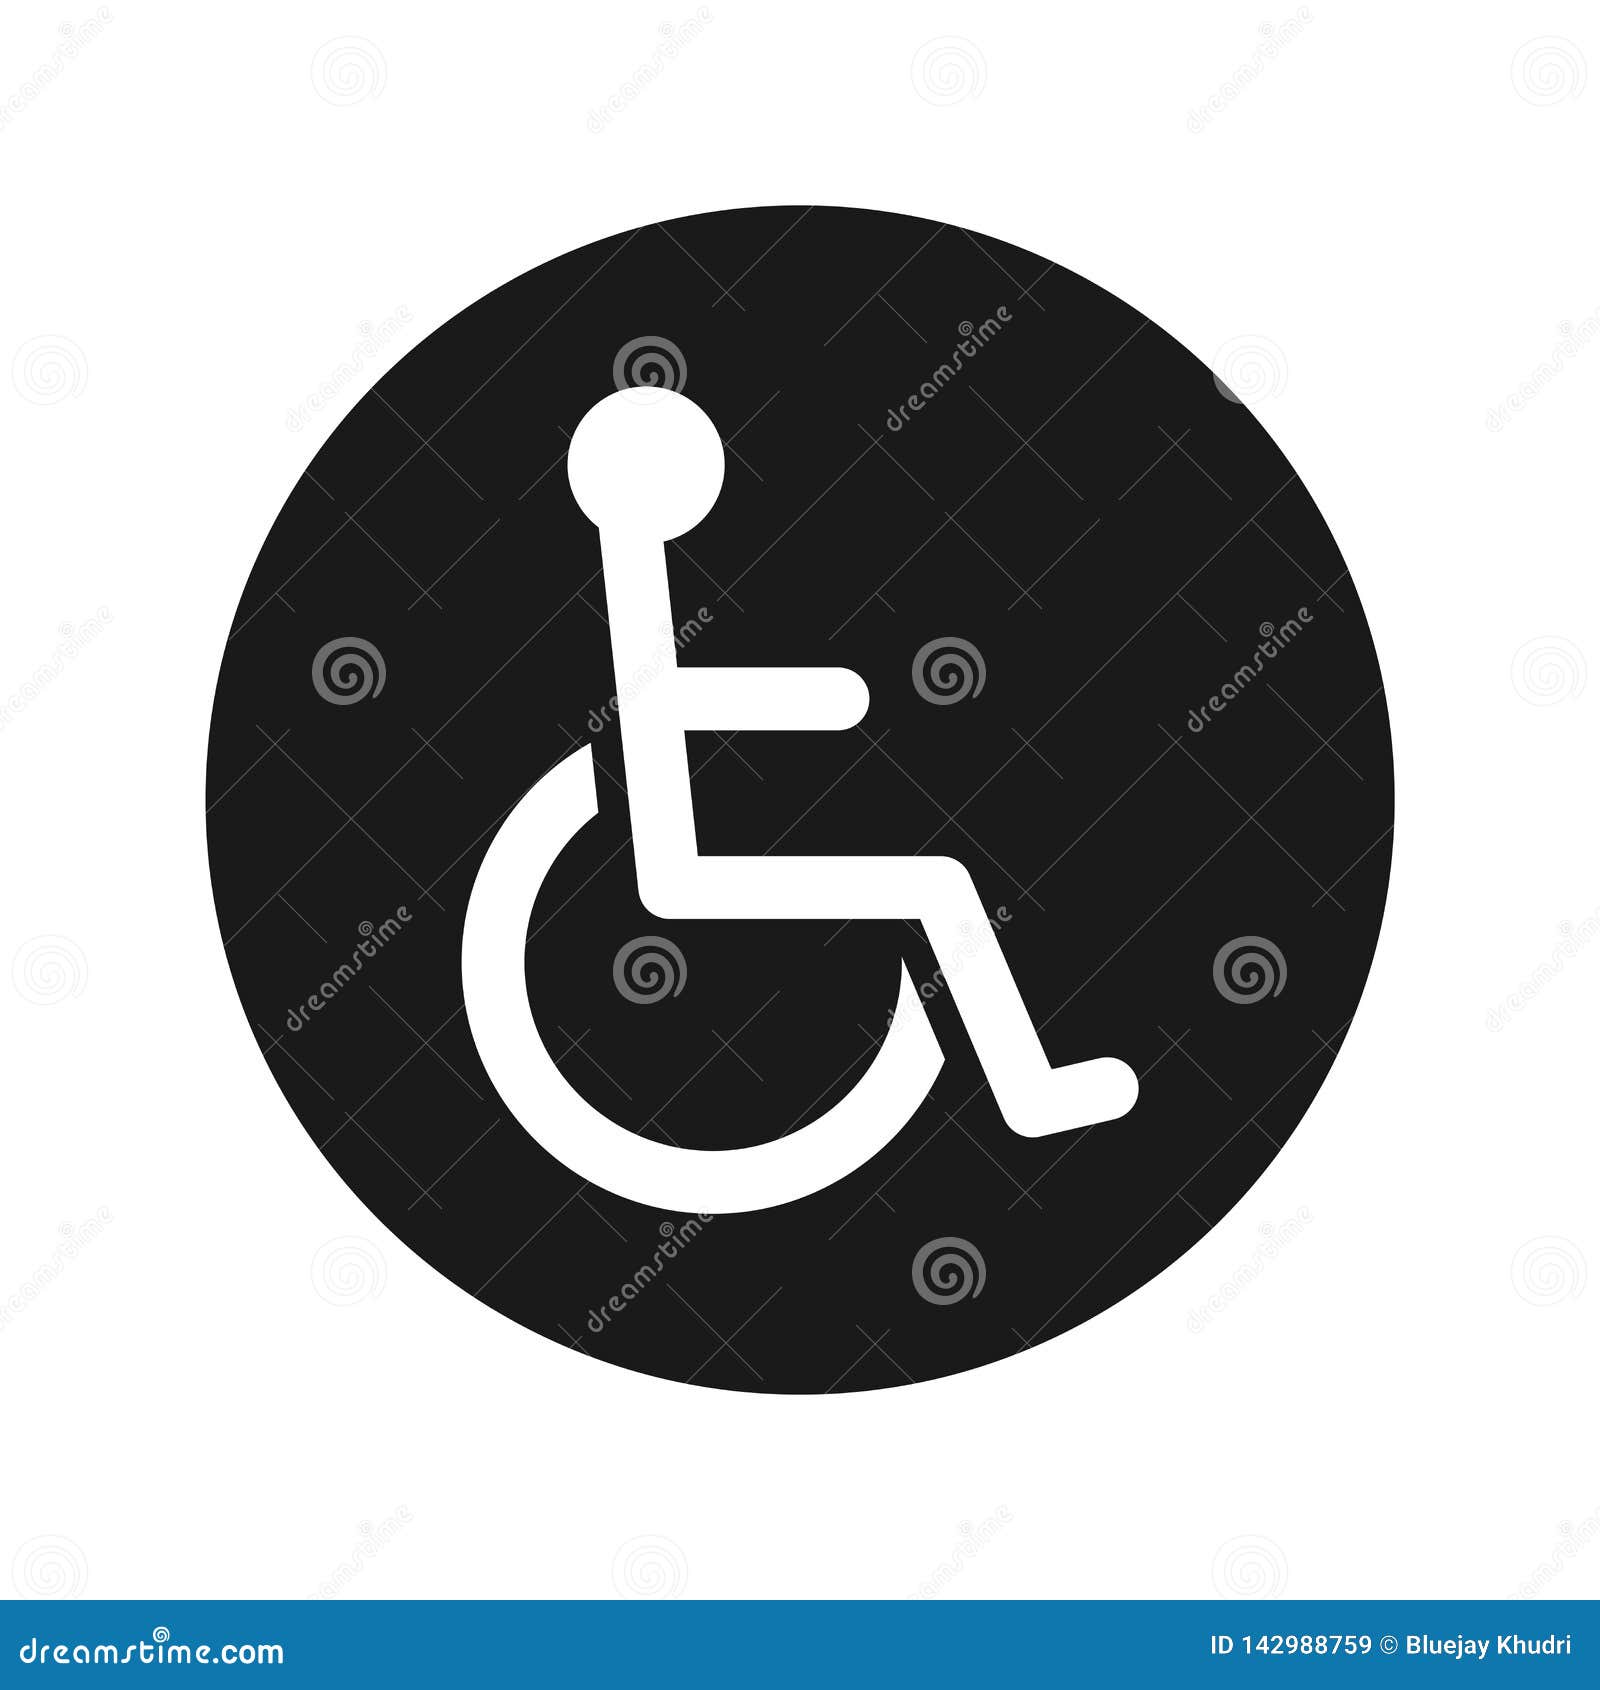 wheelchair handicap icon flat black round button  